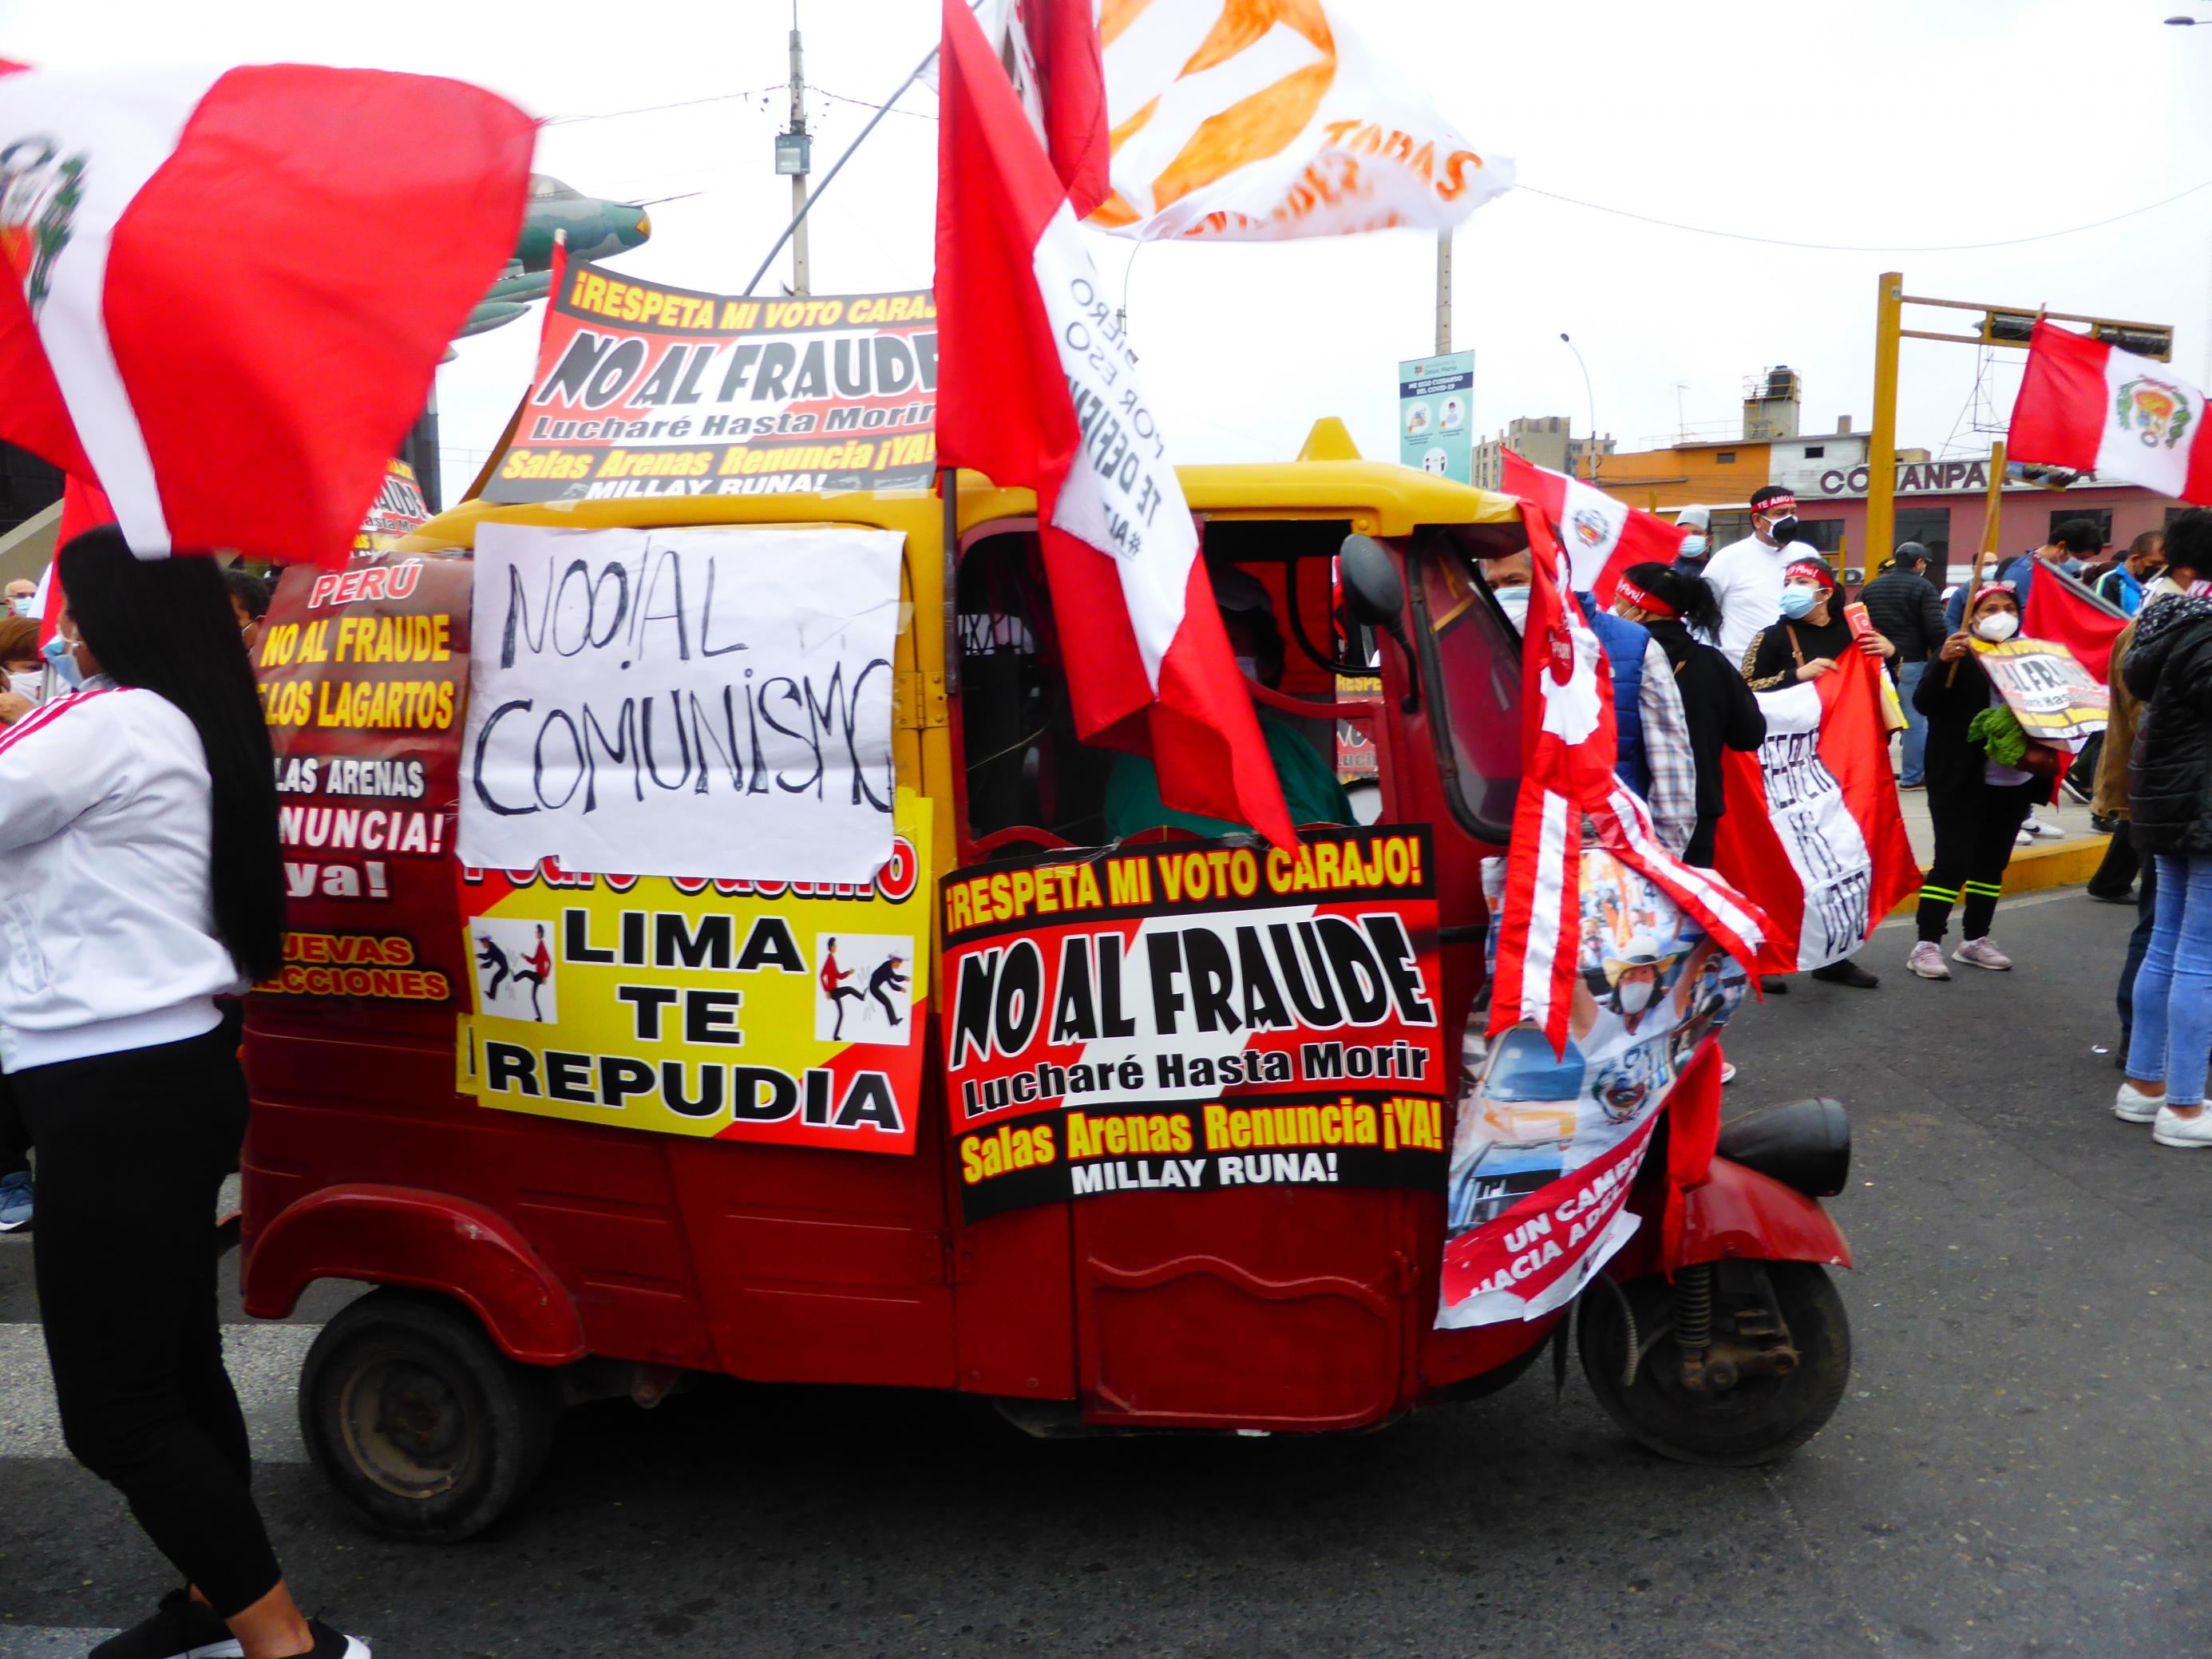 Eine dreirädrige Autorikscha mitten in einer Demo. Personen, die rot-weiße Fahnen schwingen, die Landesfarben Perus.